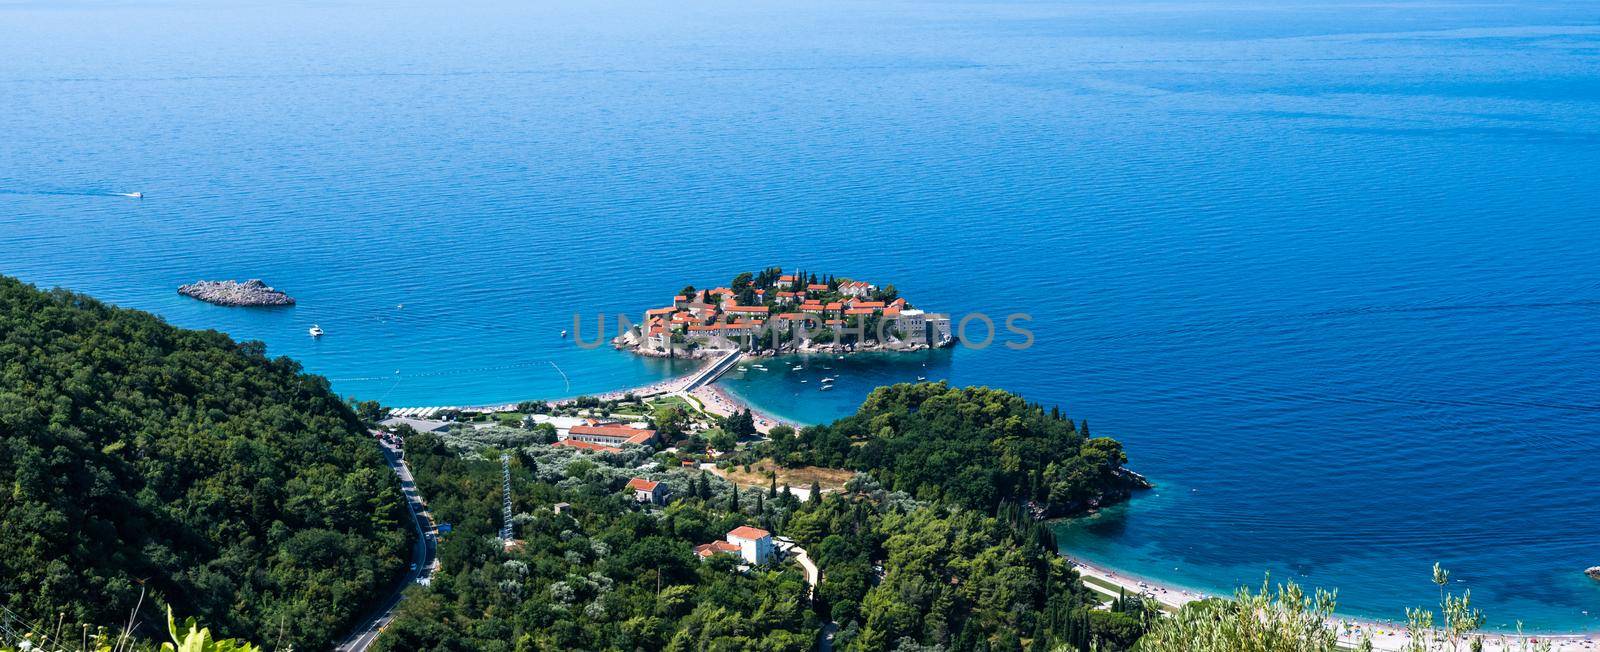 Sveti Stefan island in Montenegro by GekaSkr